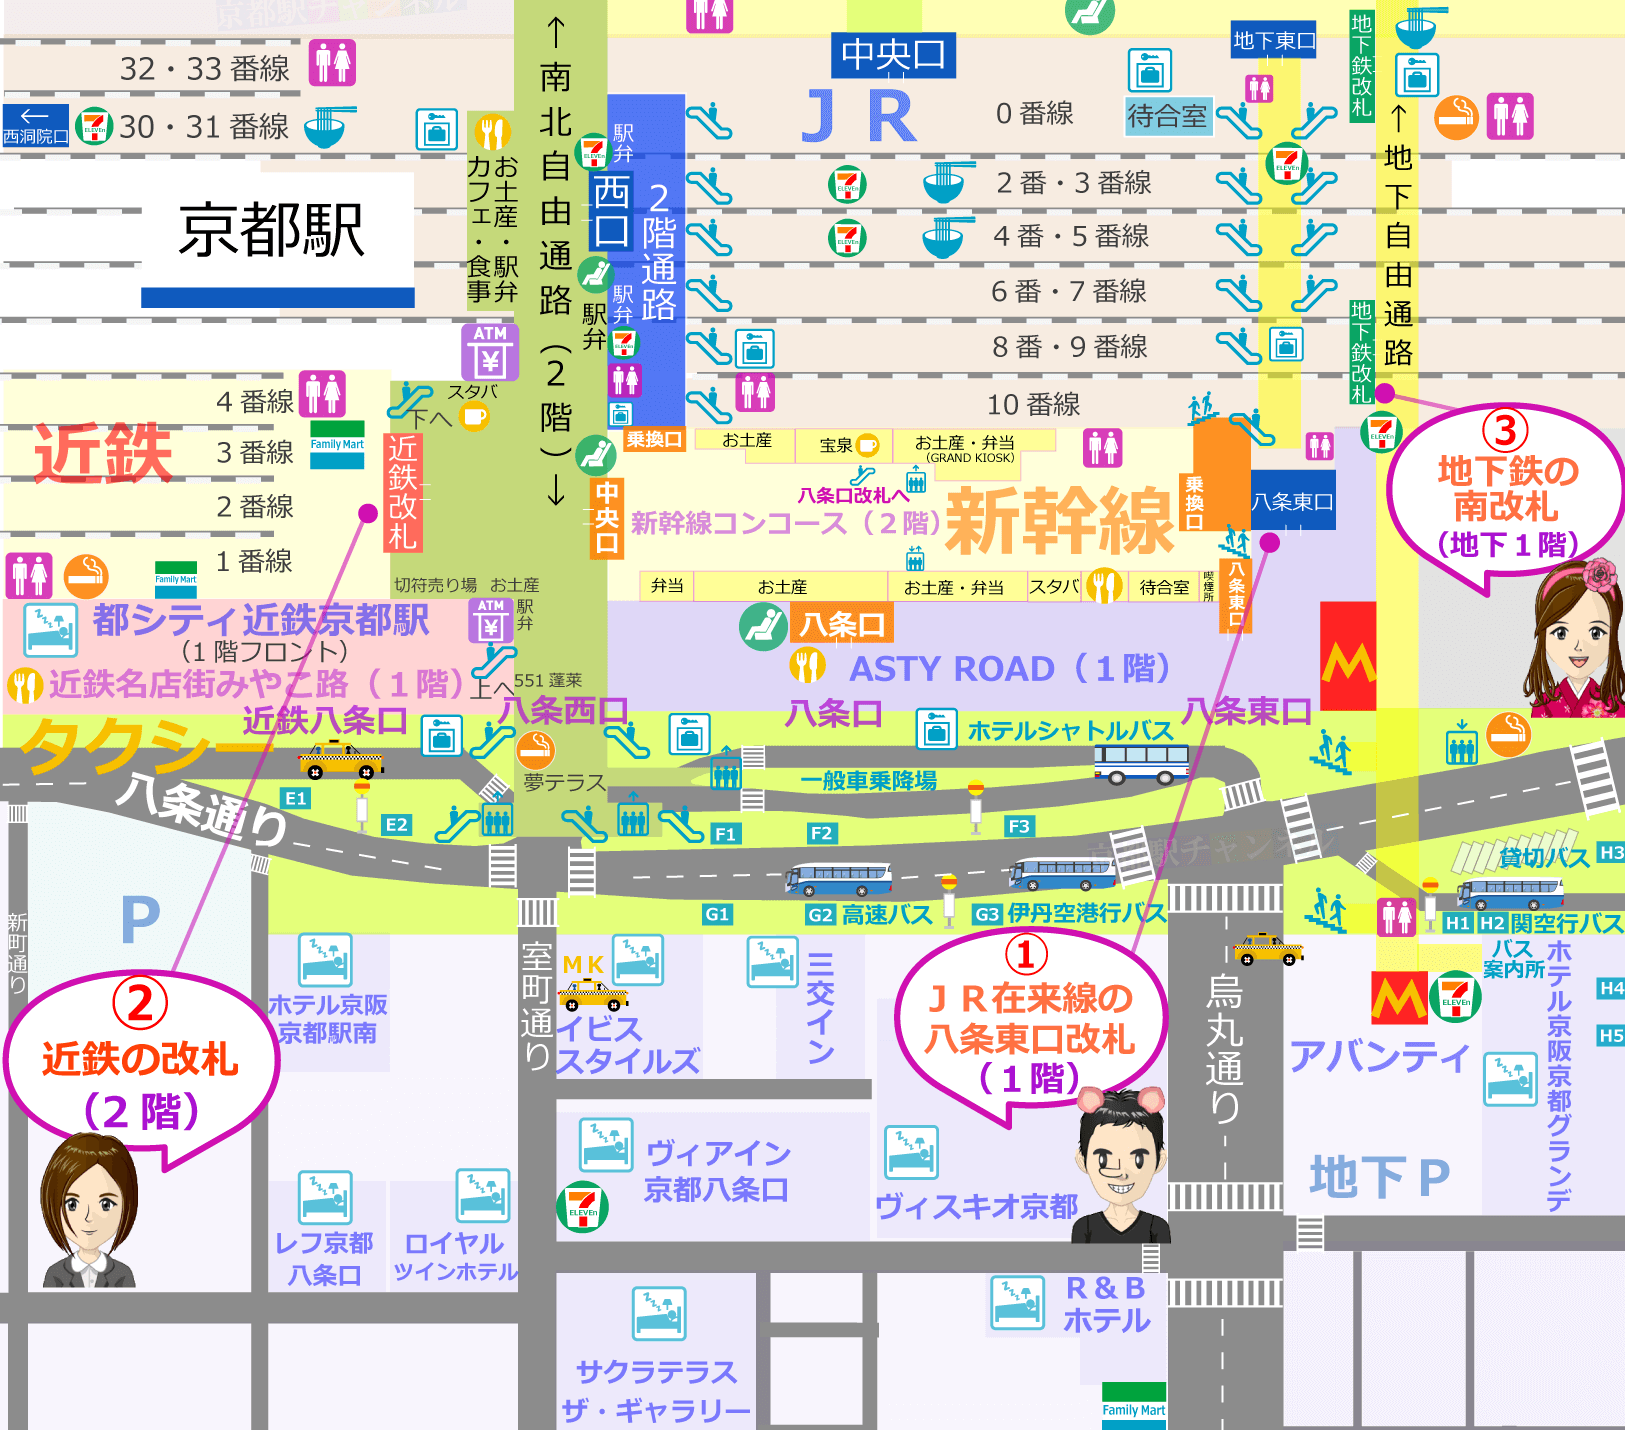 京都駅の八条口の構内図